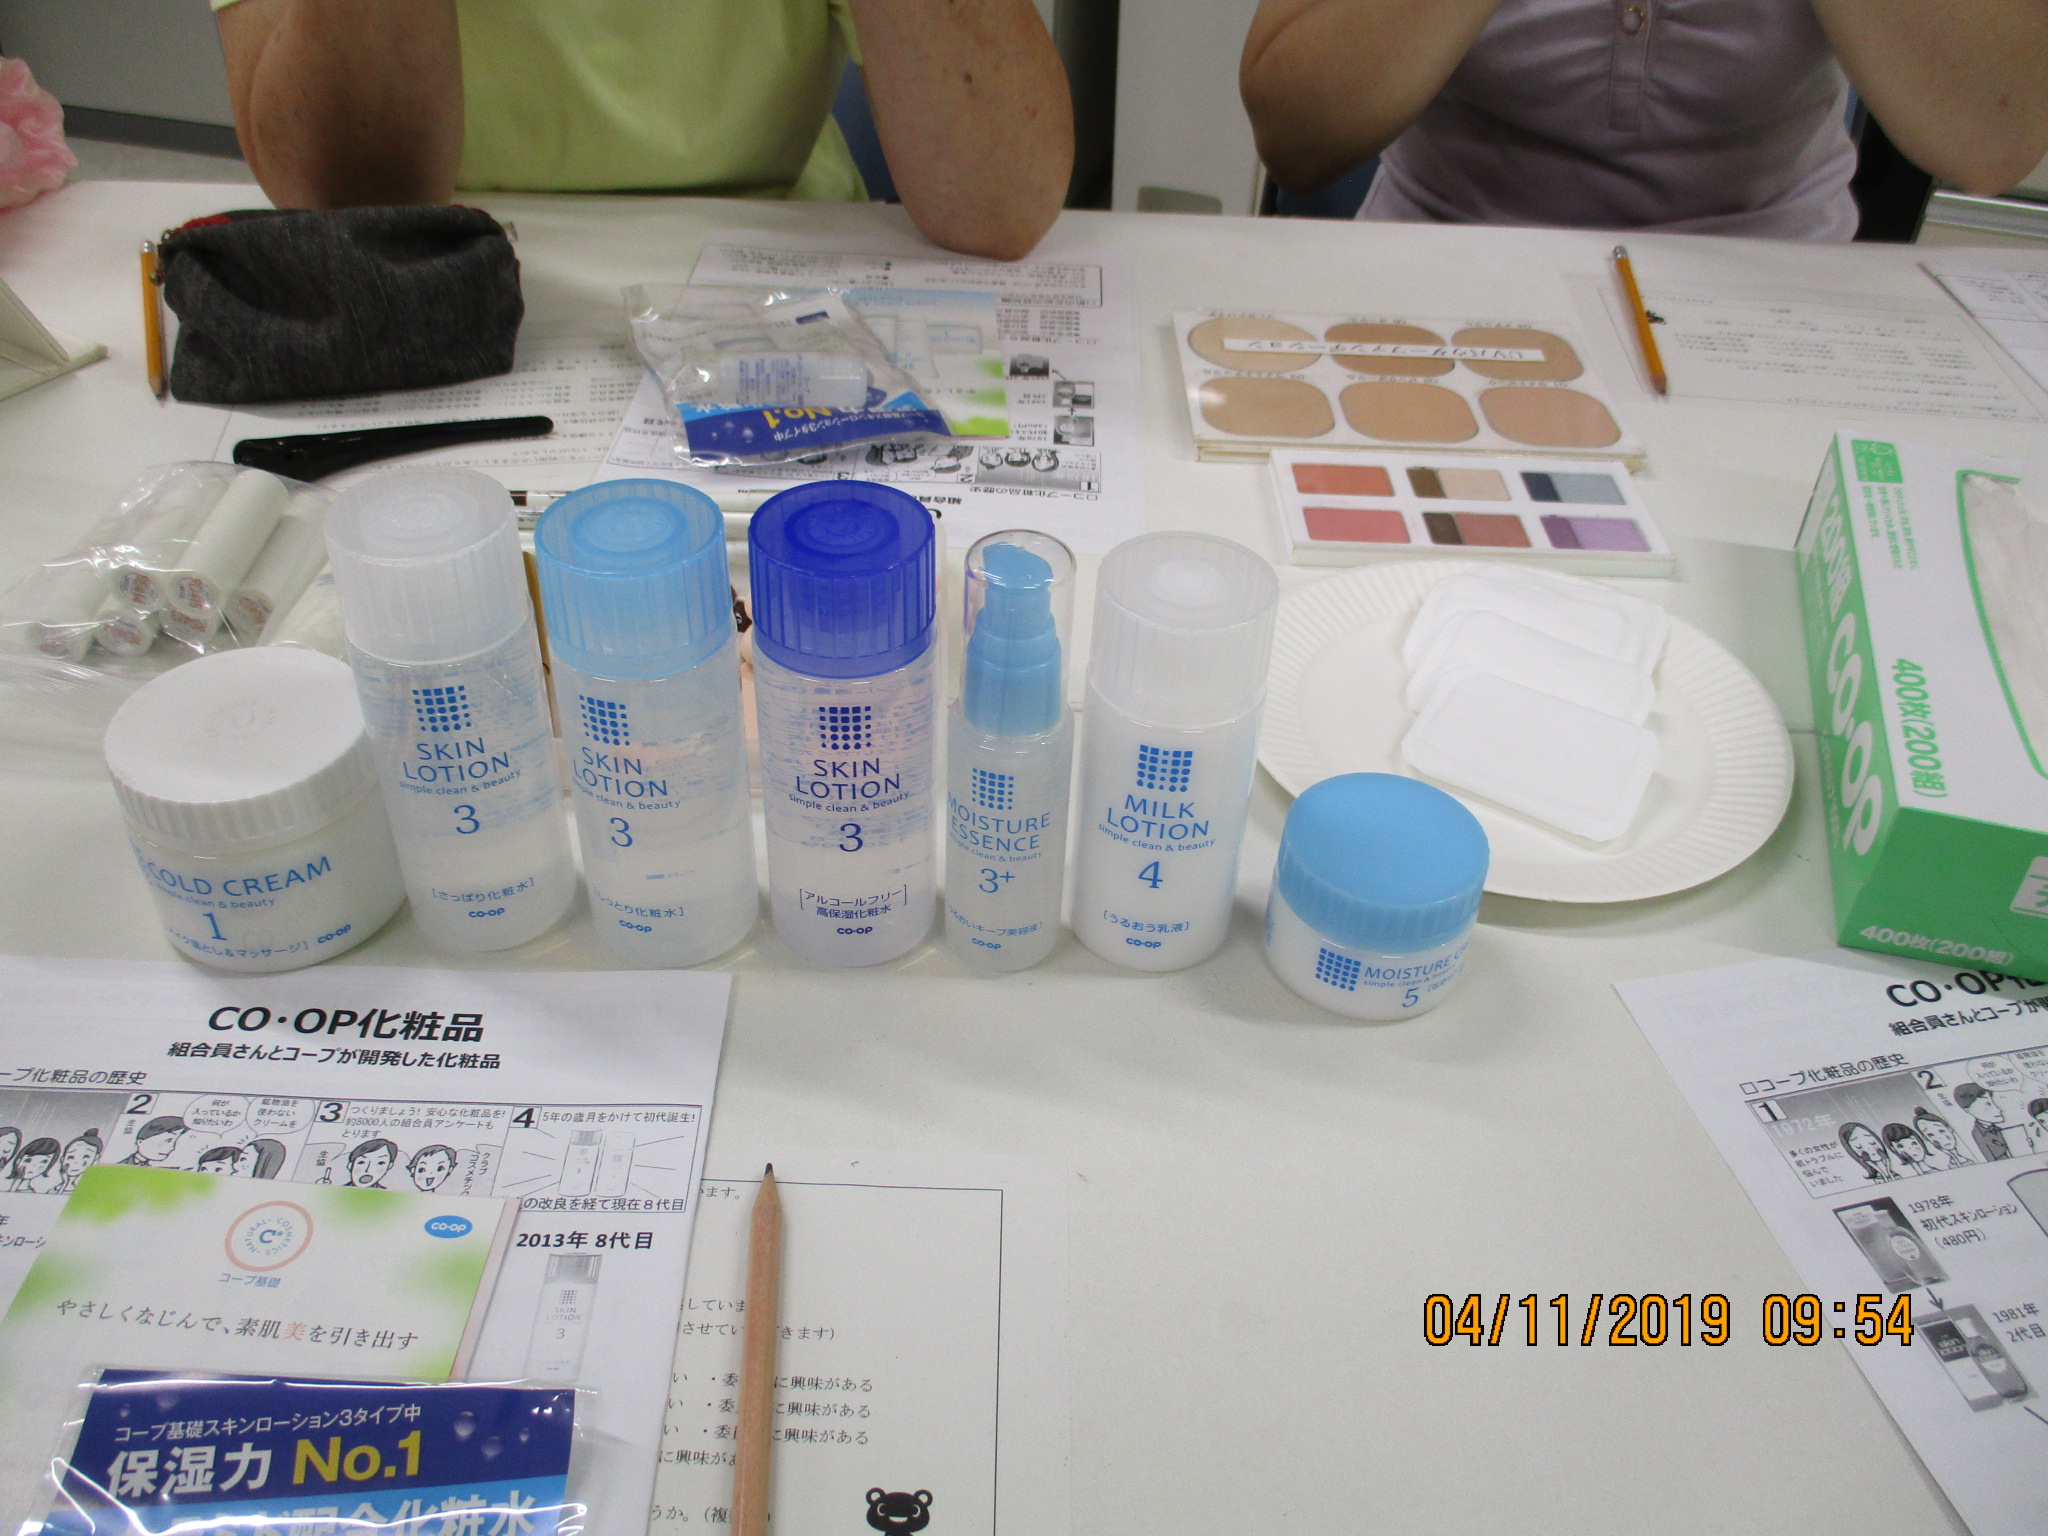 若狭 コープ基礎化粧品 コープでメイク 開催 福井県民生活協同組合